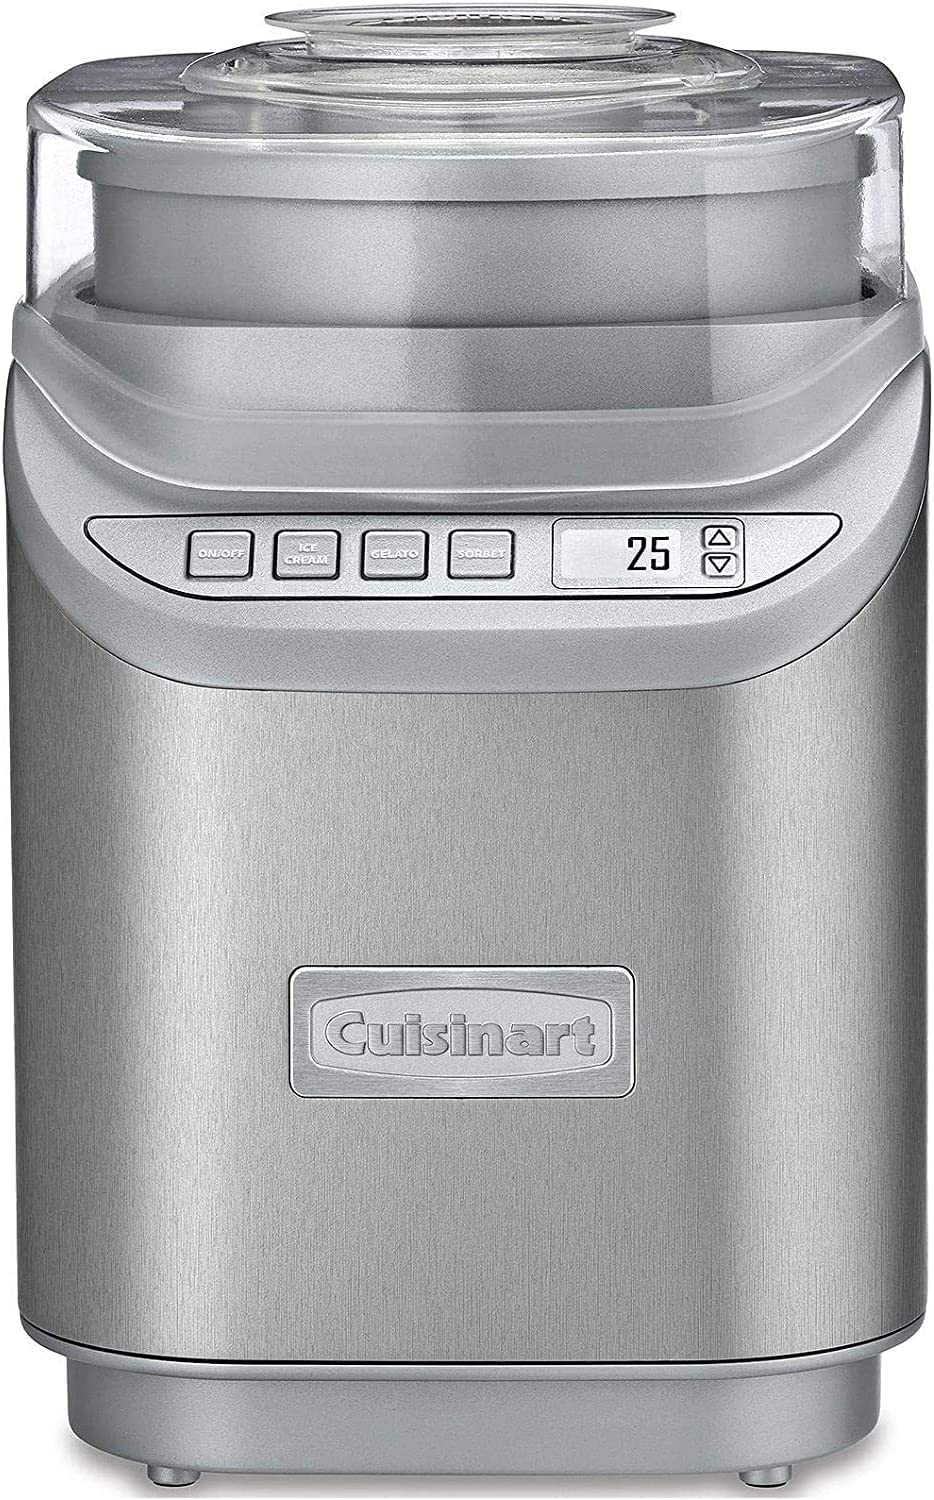 Cuisinart Ice 70 Electronic Ice Maker, Brushed Chrome